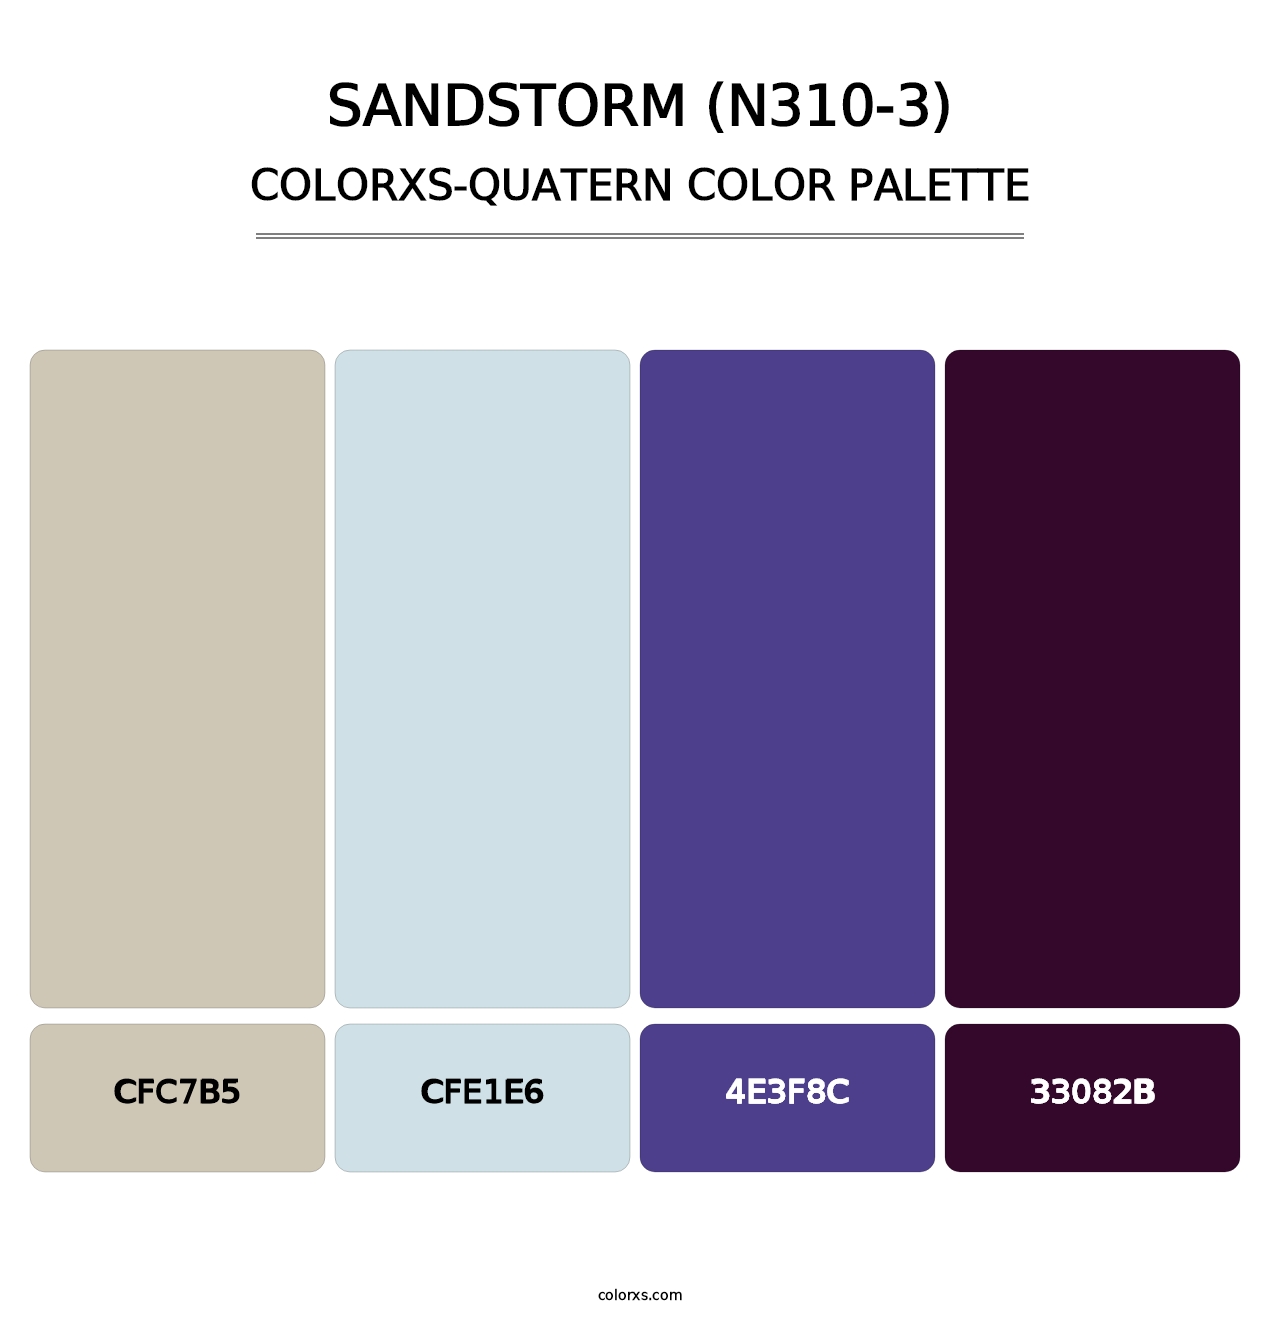 Sandstorm (N310-3) - Colorxs Quatern Palette